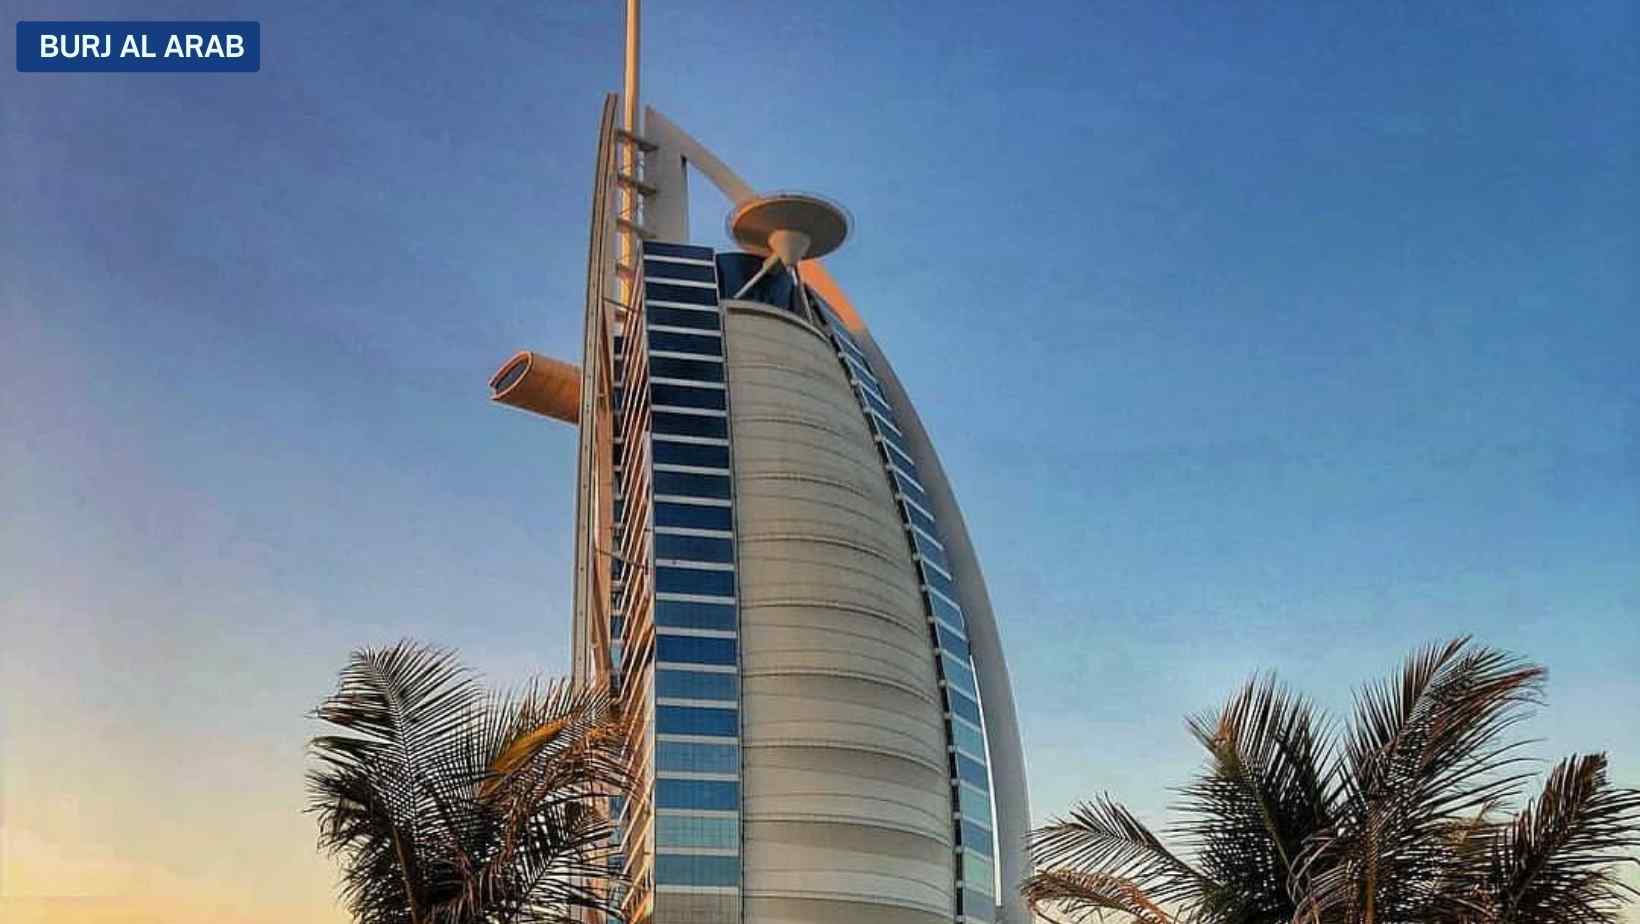 Burj Al Arab